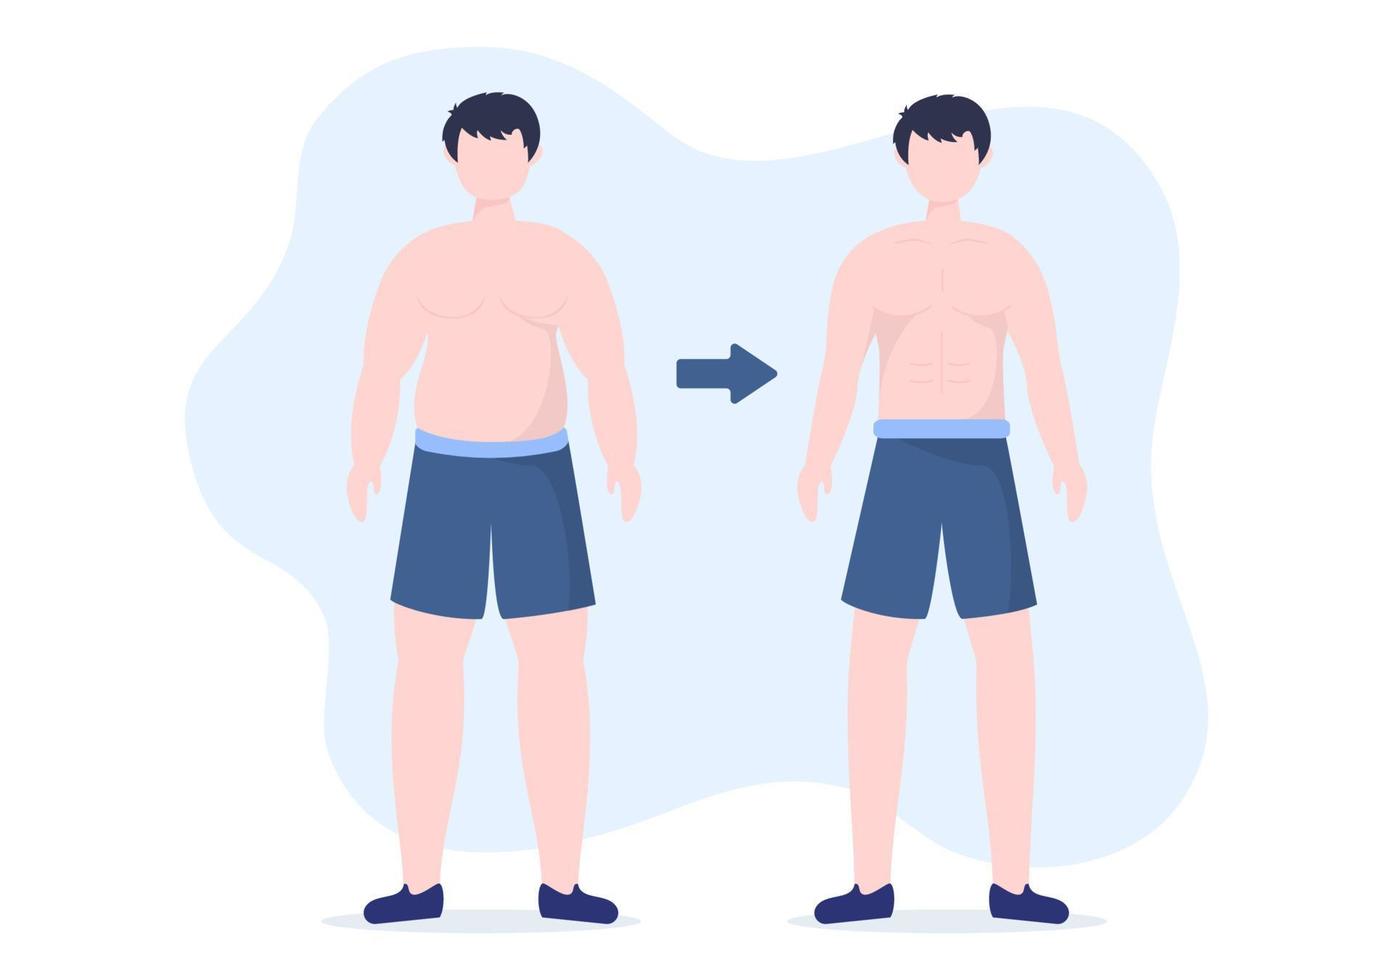 modelo de perda de peso ilustração plana de desenhos animados desenhados à mão de pessoas com excesso de peso fazendo exercícios, treinando e planejando dieta para um corpo magro vetor